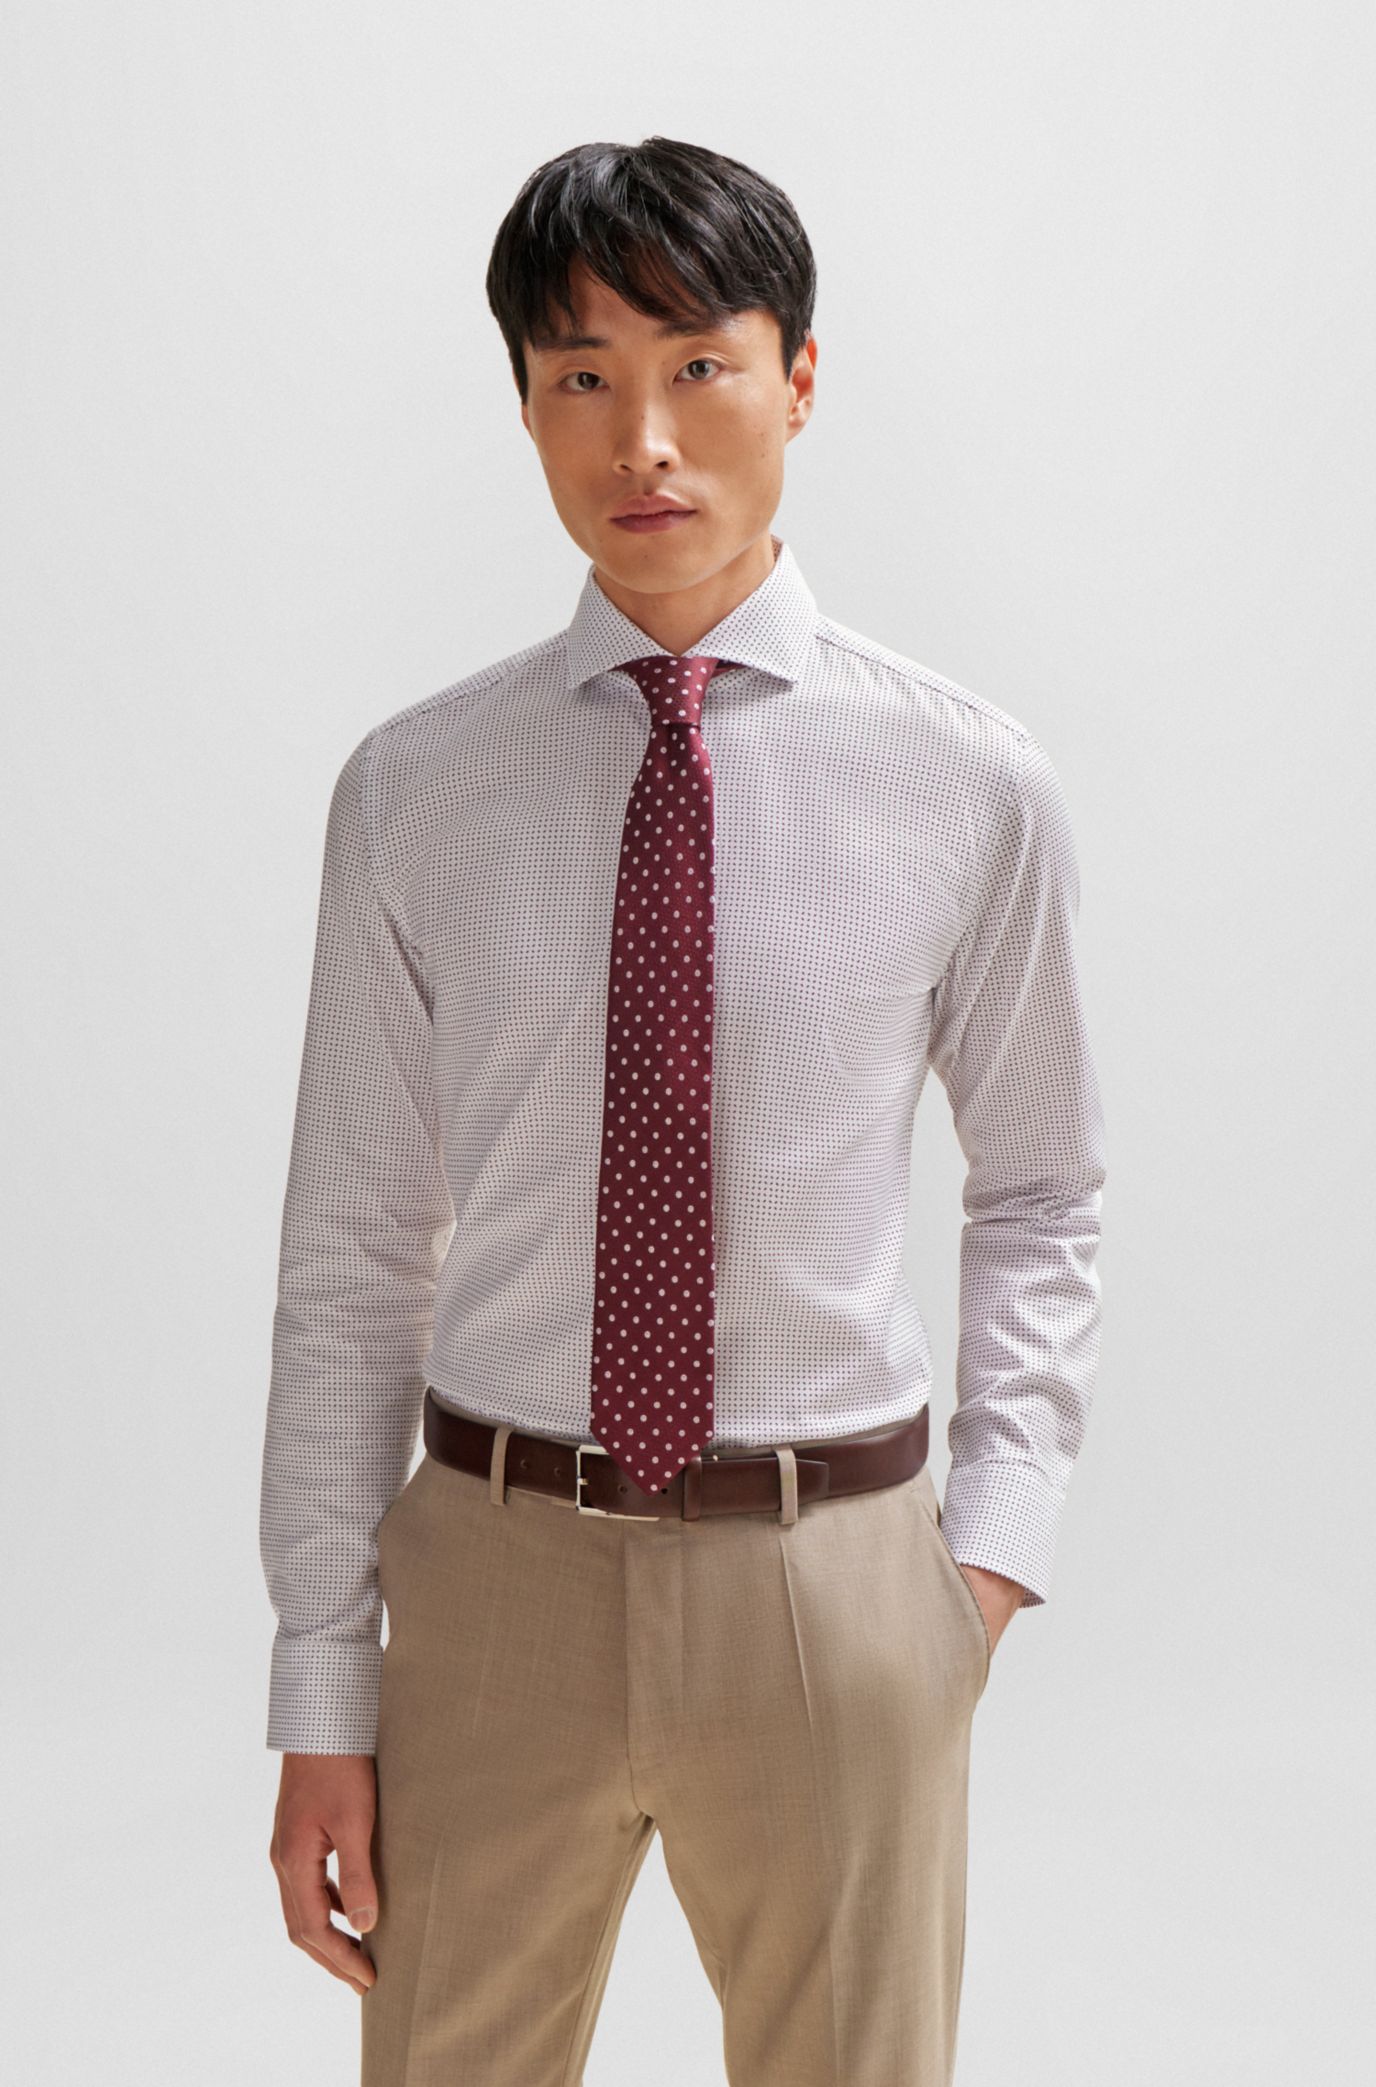 BOSS - Silk-jacquard tie with micro pattern